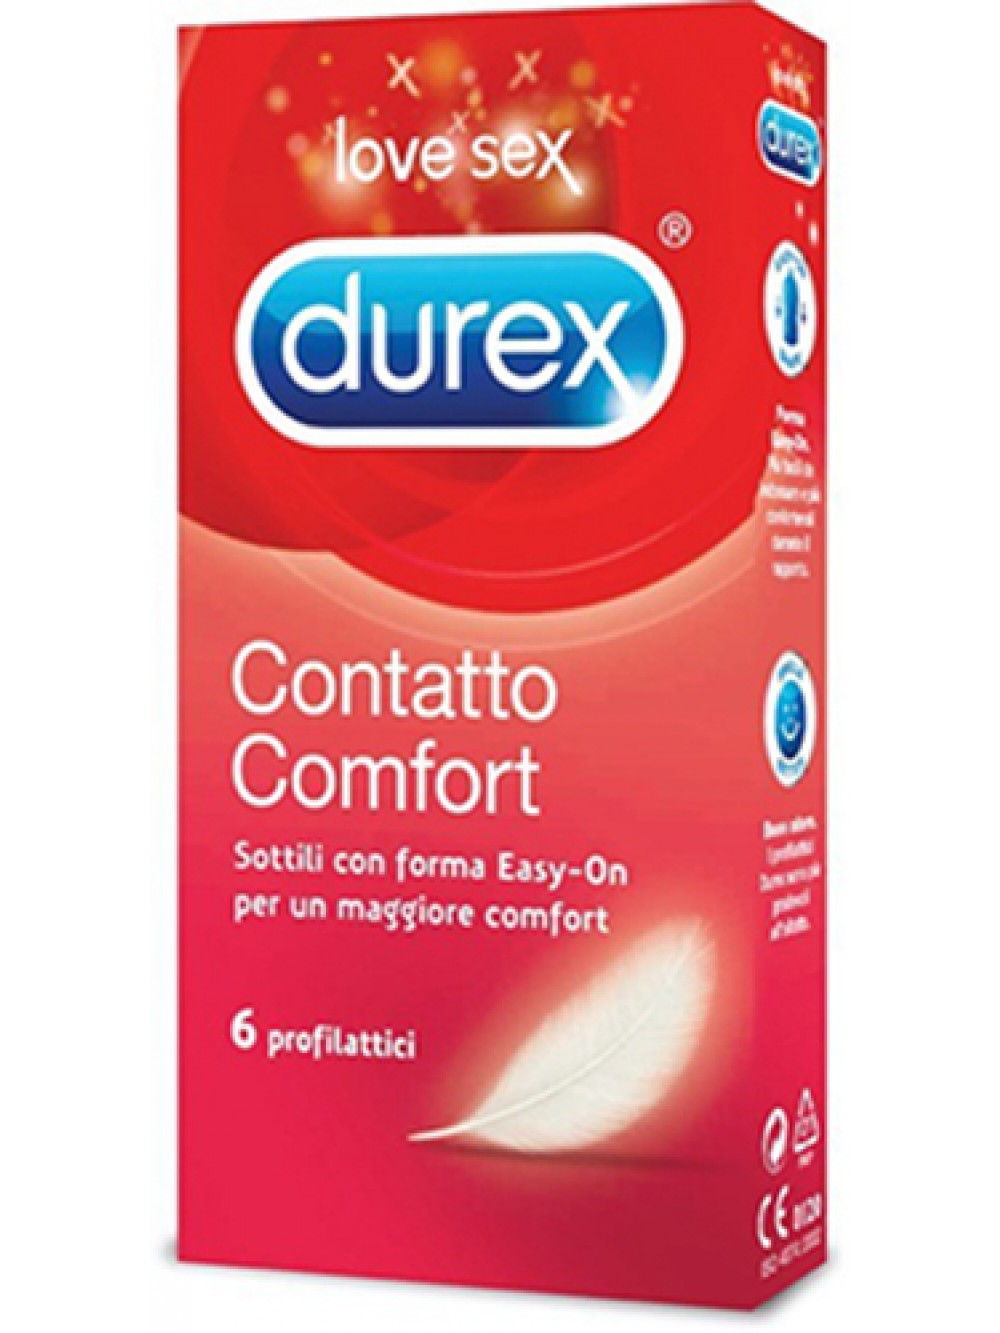 Durex Contatto Comfort 5038483444993 